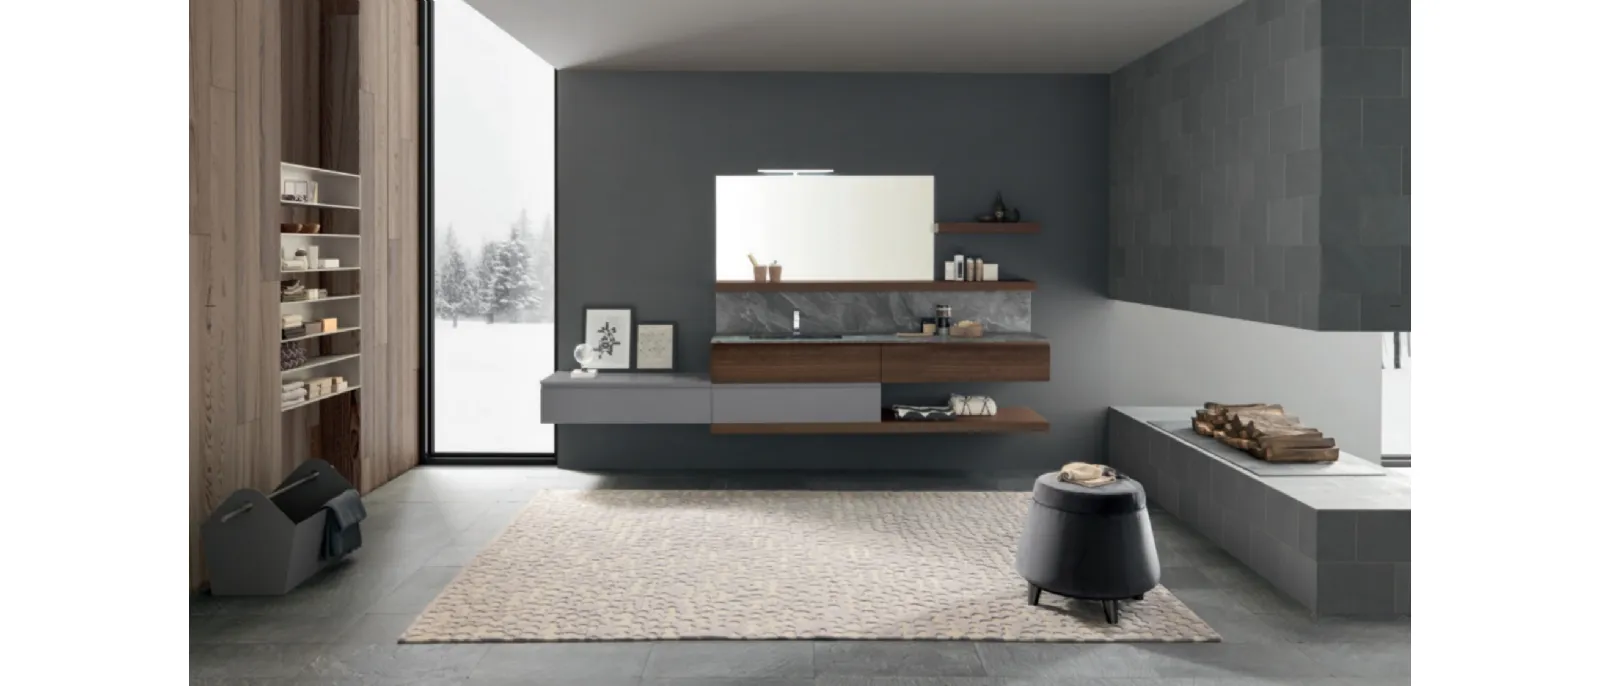 M1 System C112 Bathroom Furniture by Baxar